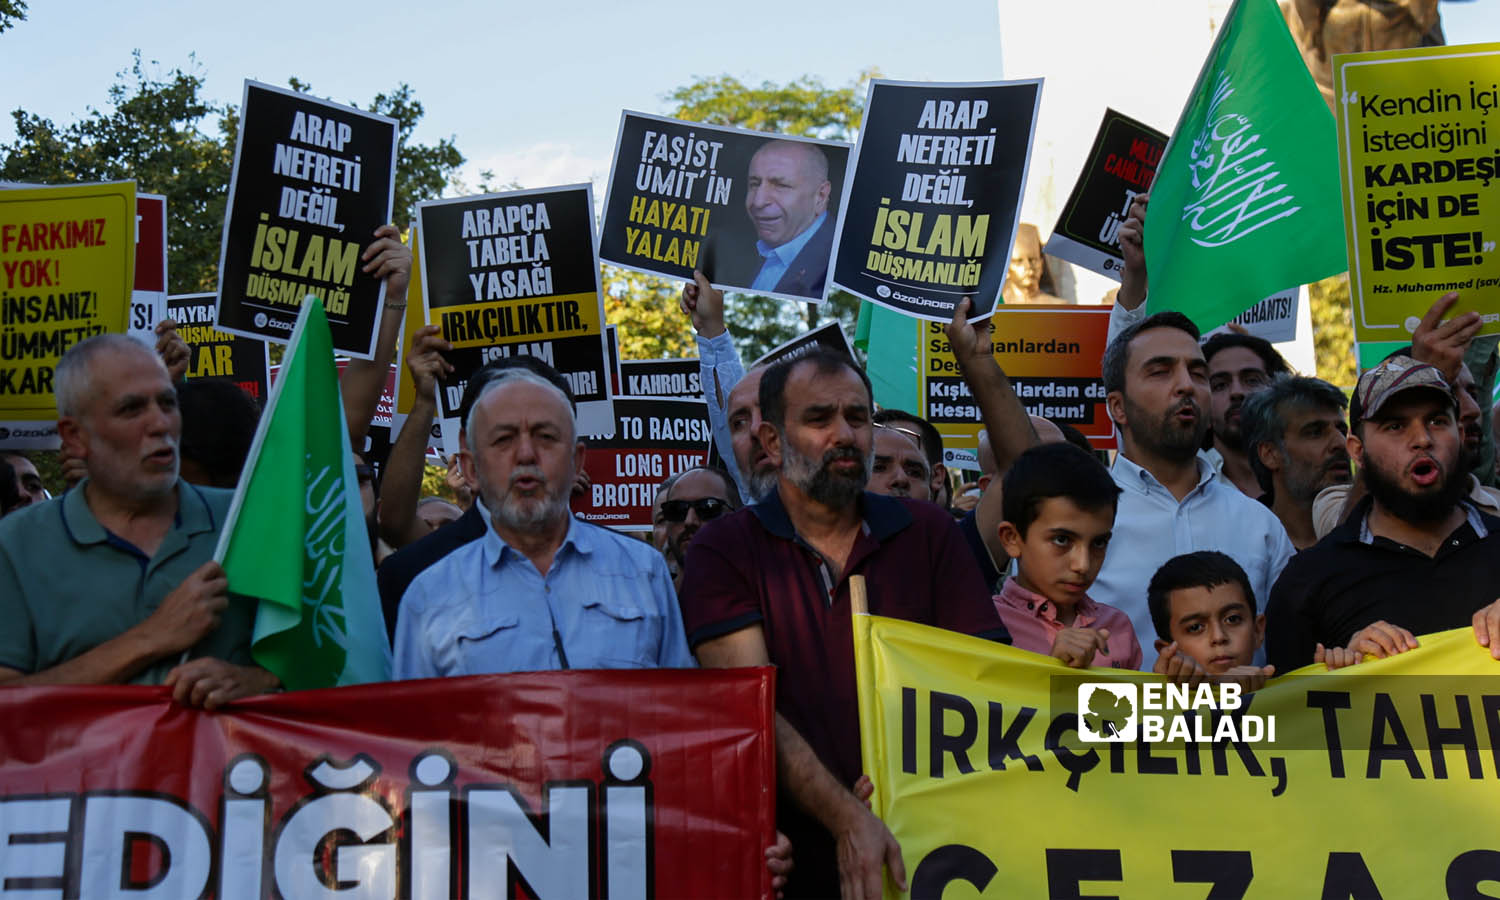 ناشطون أتراك يتضامنون مع اللاجئين السوريين في تركيا ويطالبون بوقف خطاب الكراهية ومحاسبة العنصريين- اسطنبول 16 من أيلول 2023 (عنب بلدي- يوسف حمّص)
